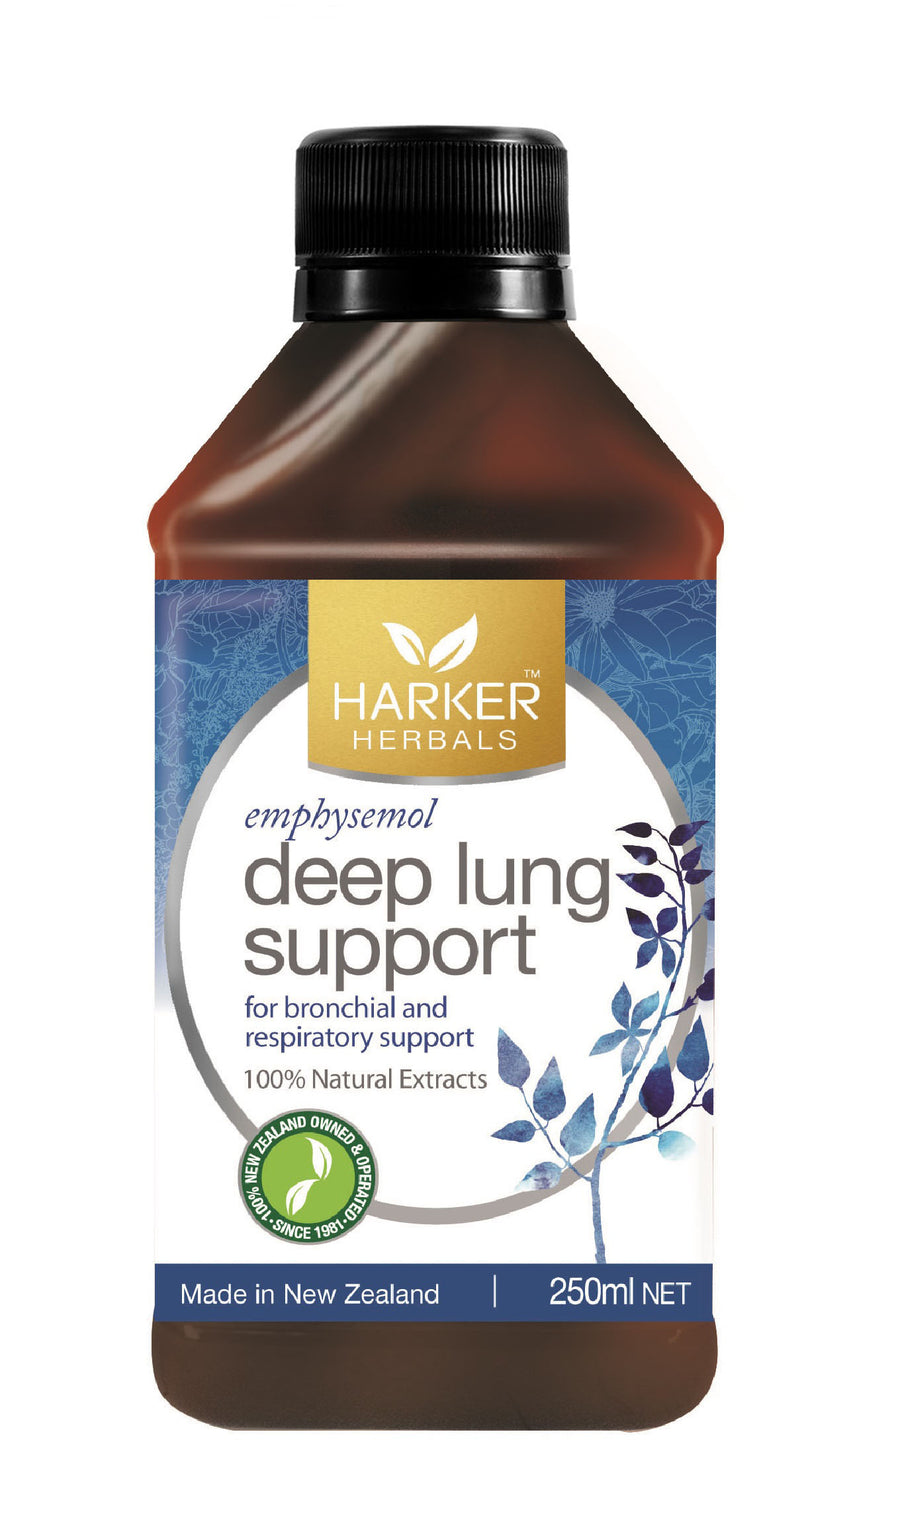 Harker Herbals Deep Lung Support Tonic